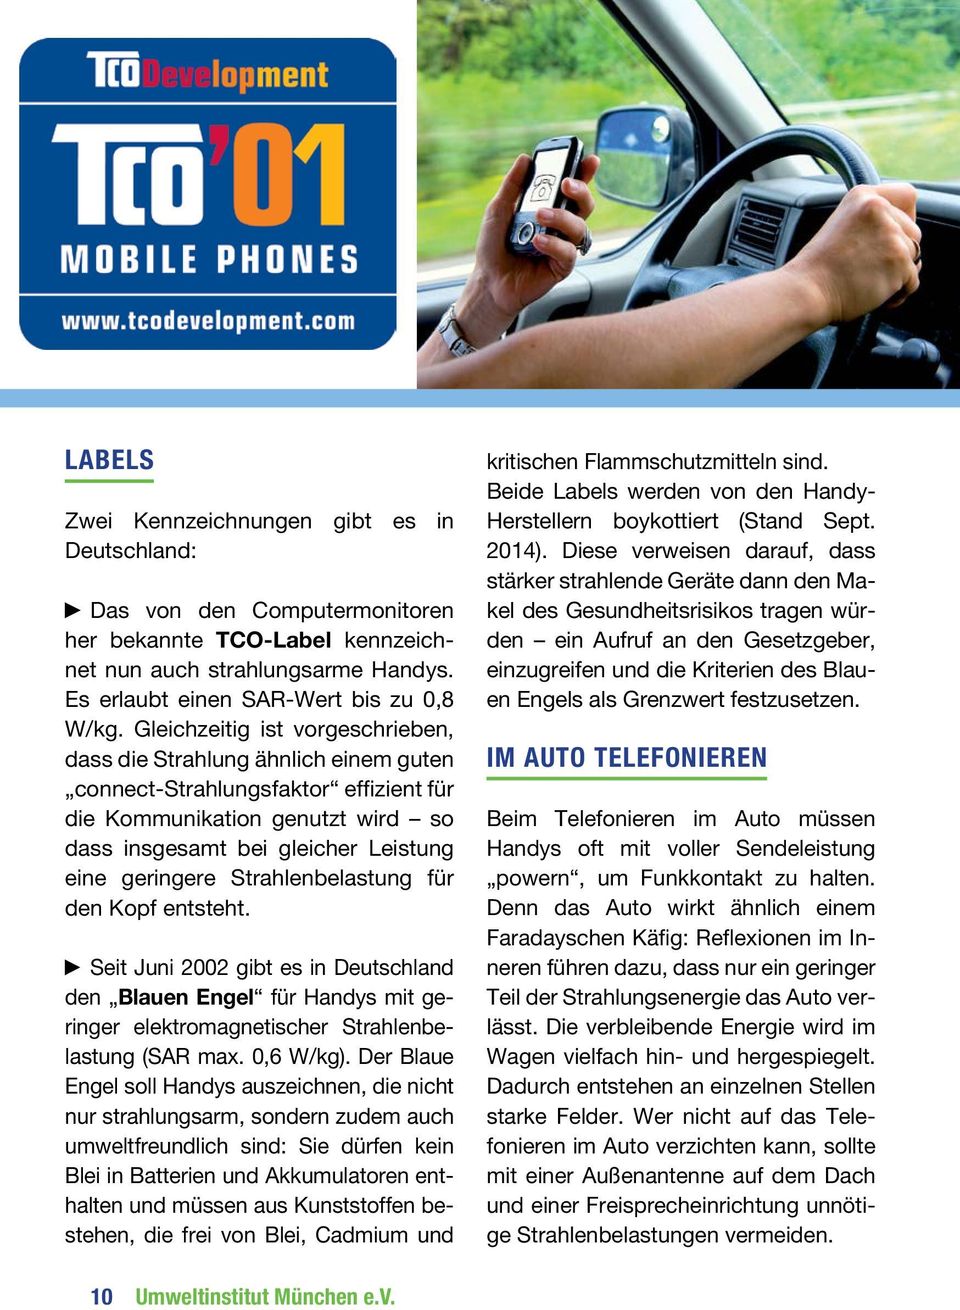 Strahlenbelastung für den Kopf entsteht. Seit Juni 2002 gibt es in Deutschland den Blauen Engel für Handys mit geringer elektromagnetischer Strahlenbelastung (SAR max. 0,6 W/kg).